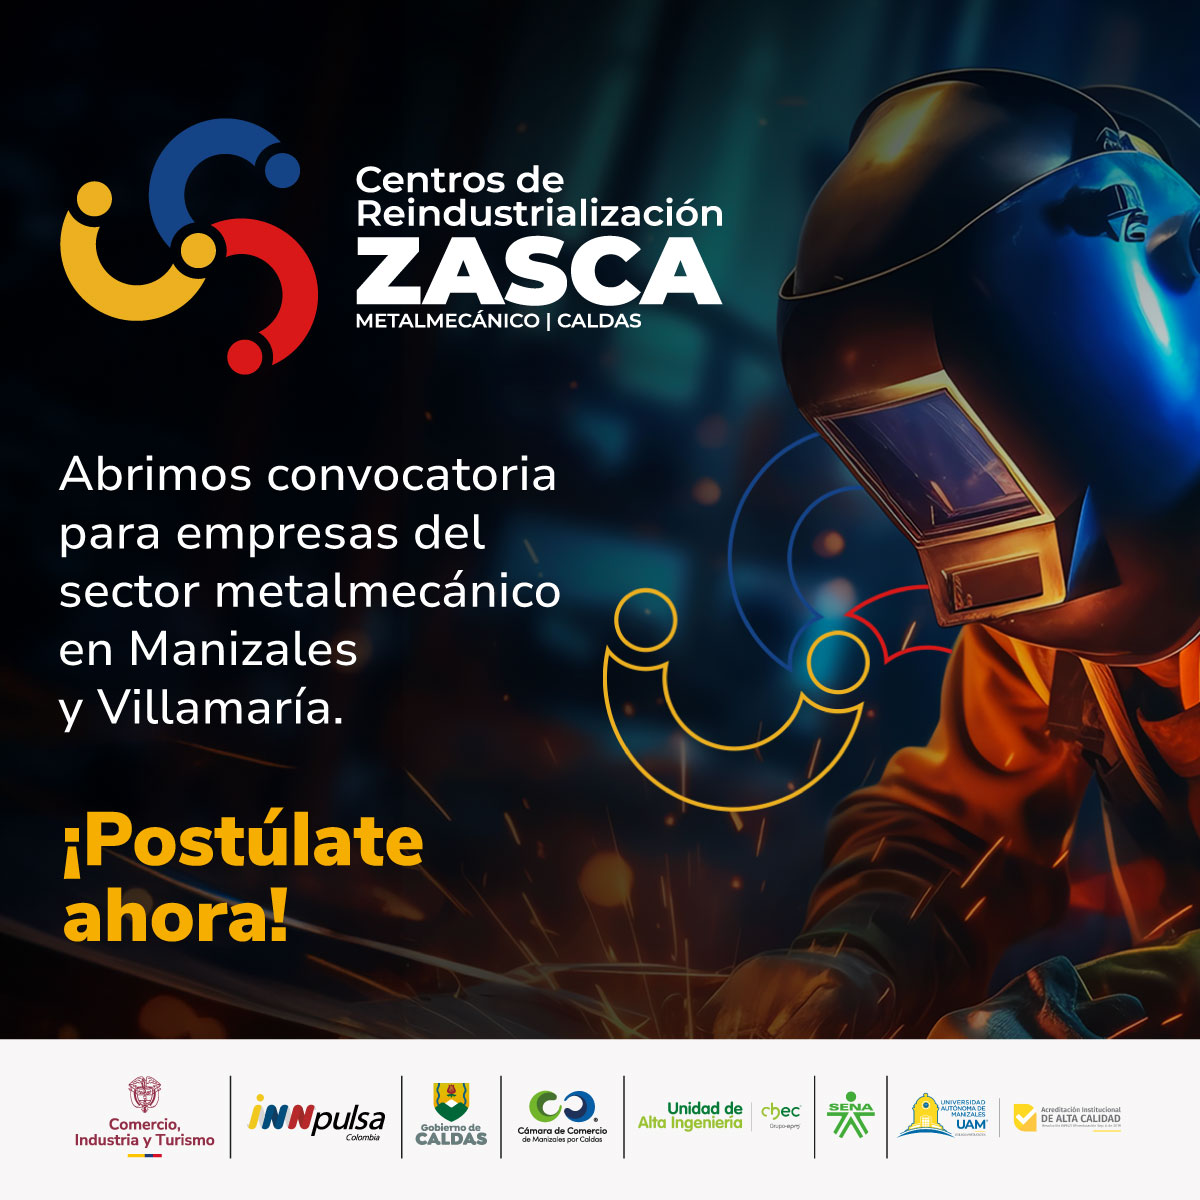 ZASCA Metalmecánica | Manizales-Villamaría, Caldas